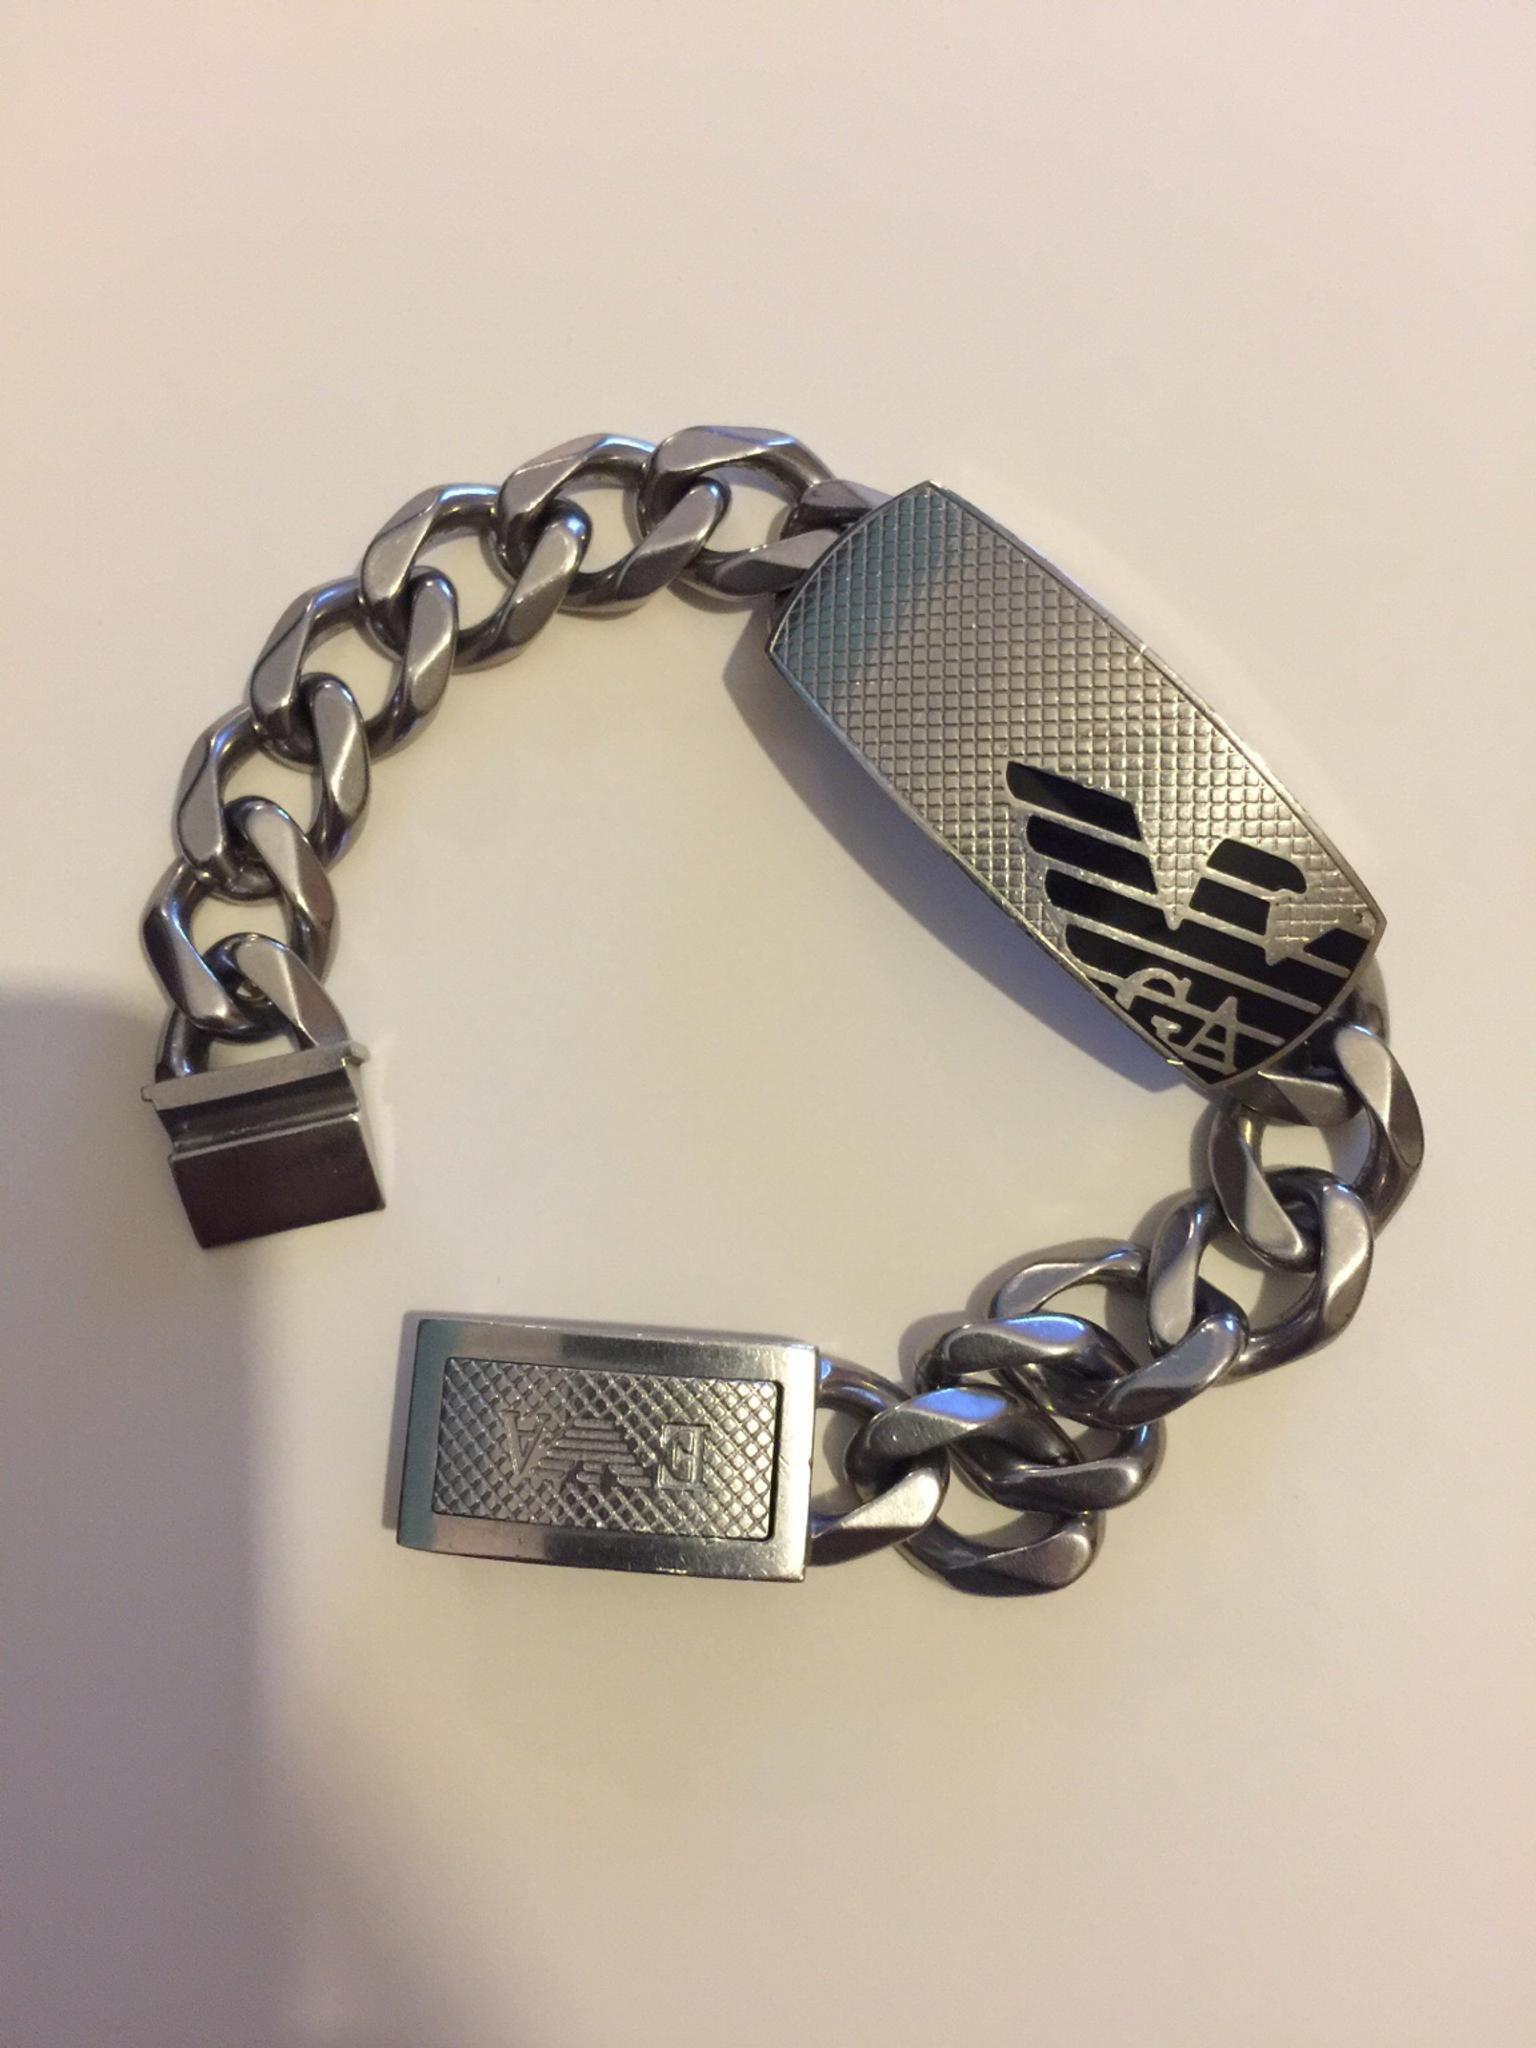 armani stainless steel bracelet